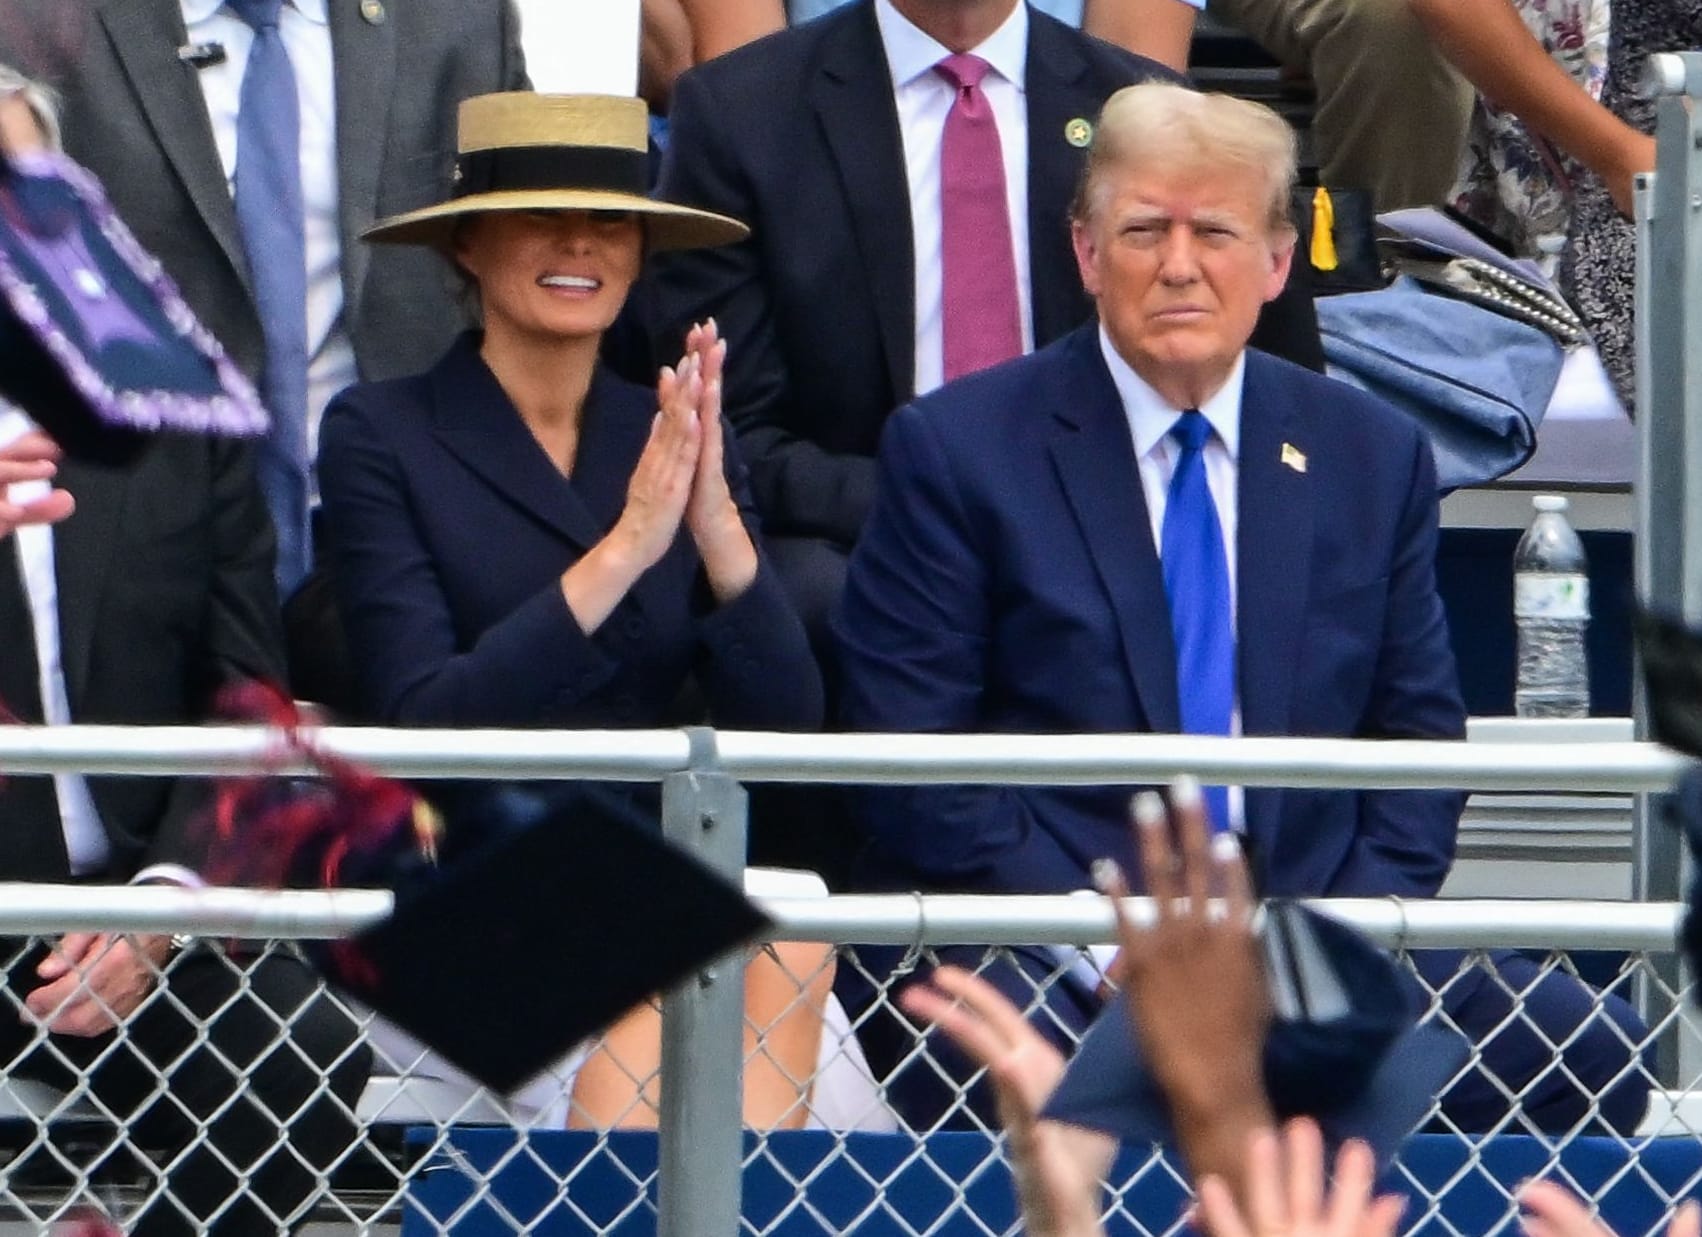 Melania und Donals Trump bei der Abschlussfeier ihres Sohnes.